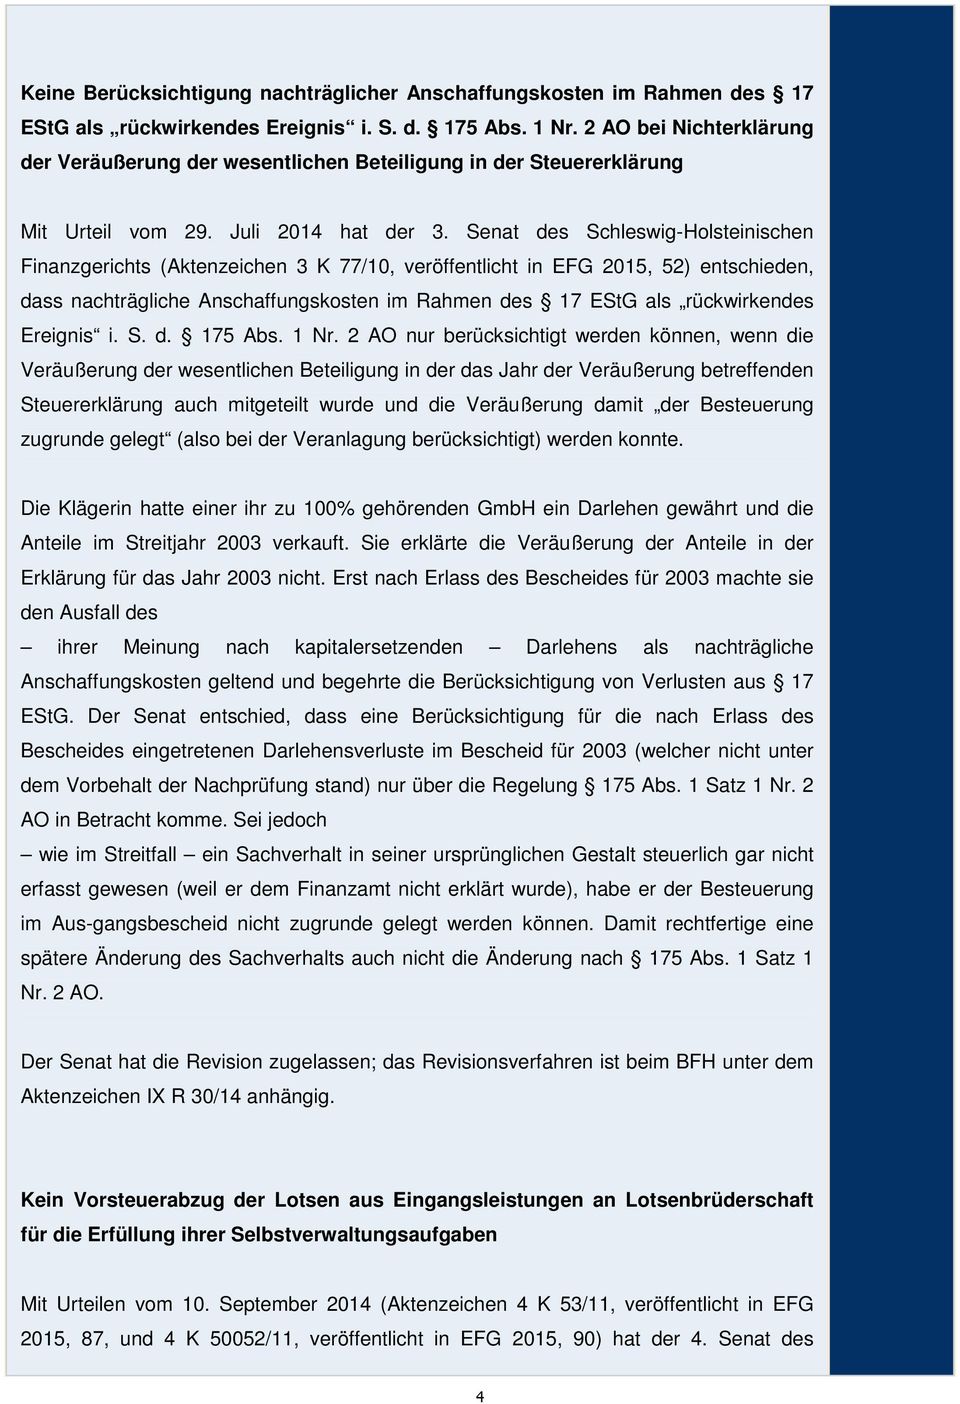 Senat des Schleswig-Holsteinischen Finanzgerichts (Aktenzeichen 3 K 77/10, veröffentlicht in EFG 2015, 52) entschieden, dass nachträgliche Anschaffungskosten im Rahmen des 17 EStG als rückwirkendes